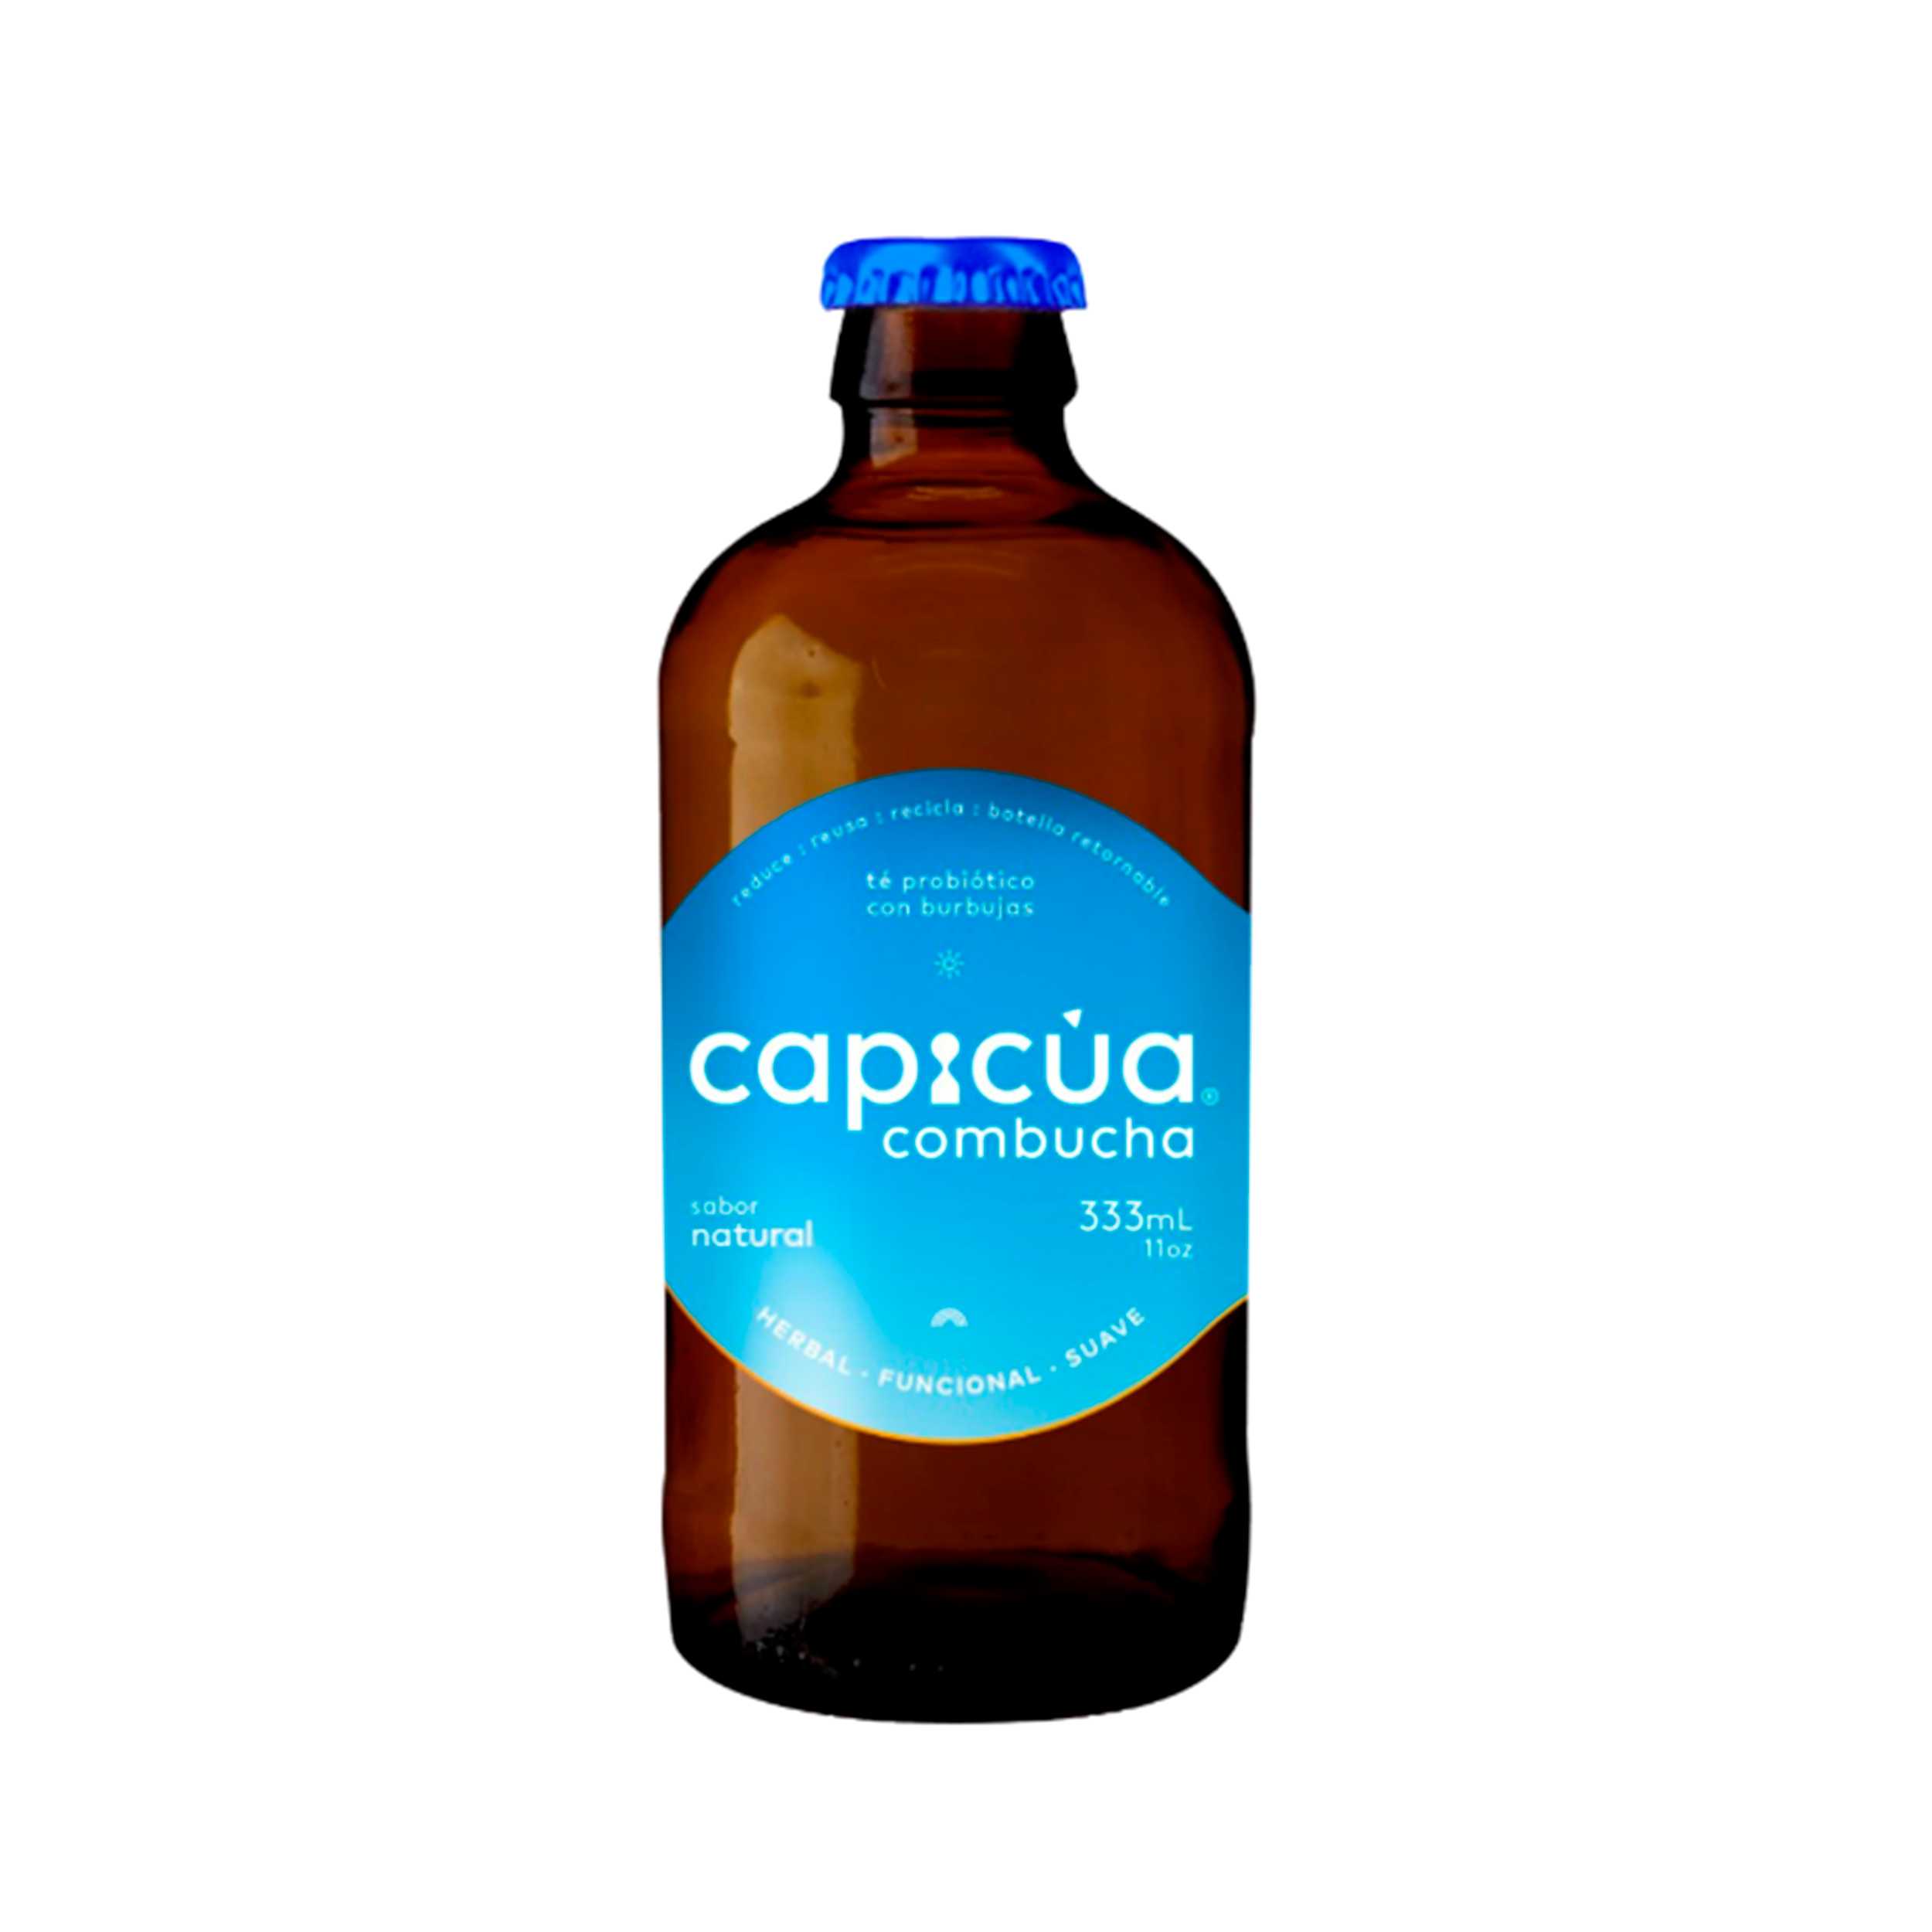 Capicua- Combucha